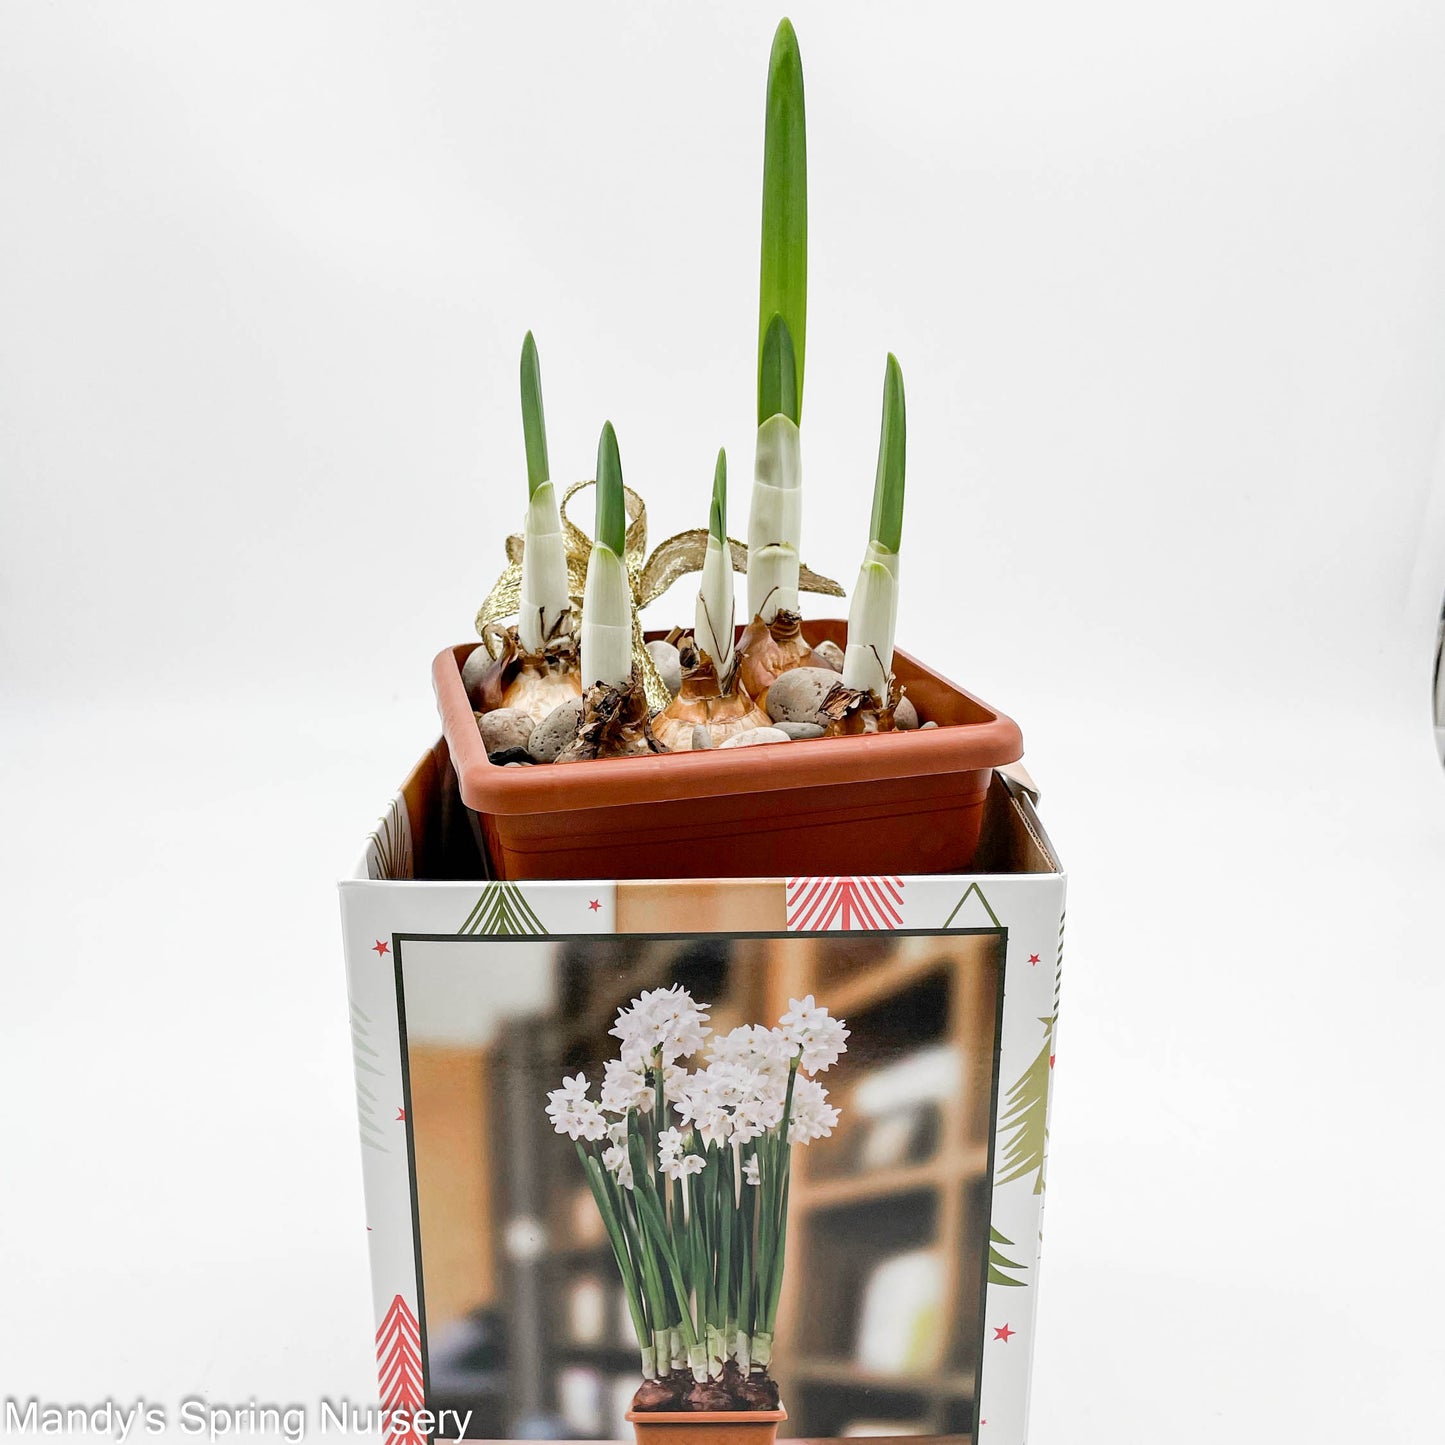 Narcissus Paperwhite Ziva   Boxed Kits